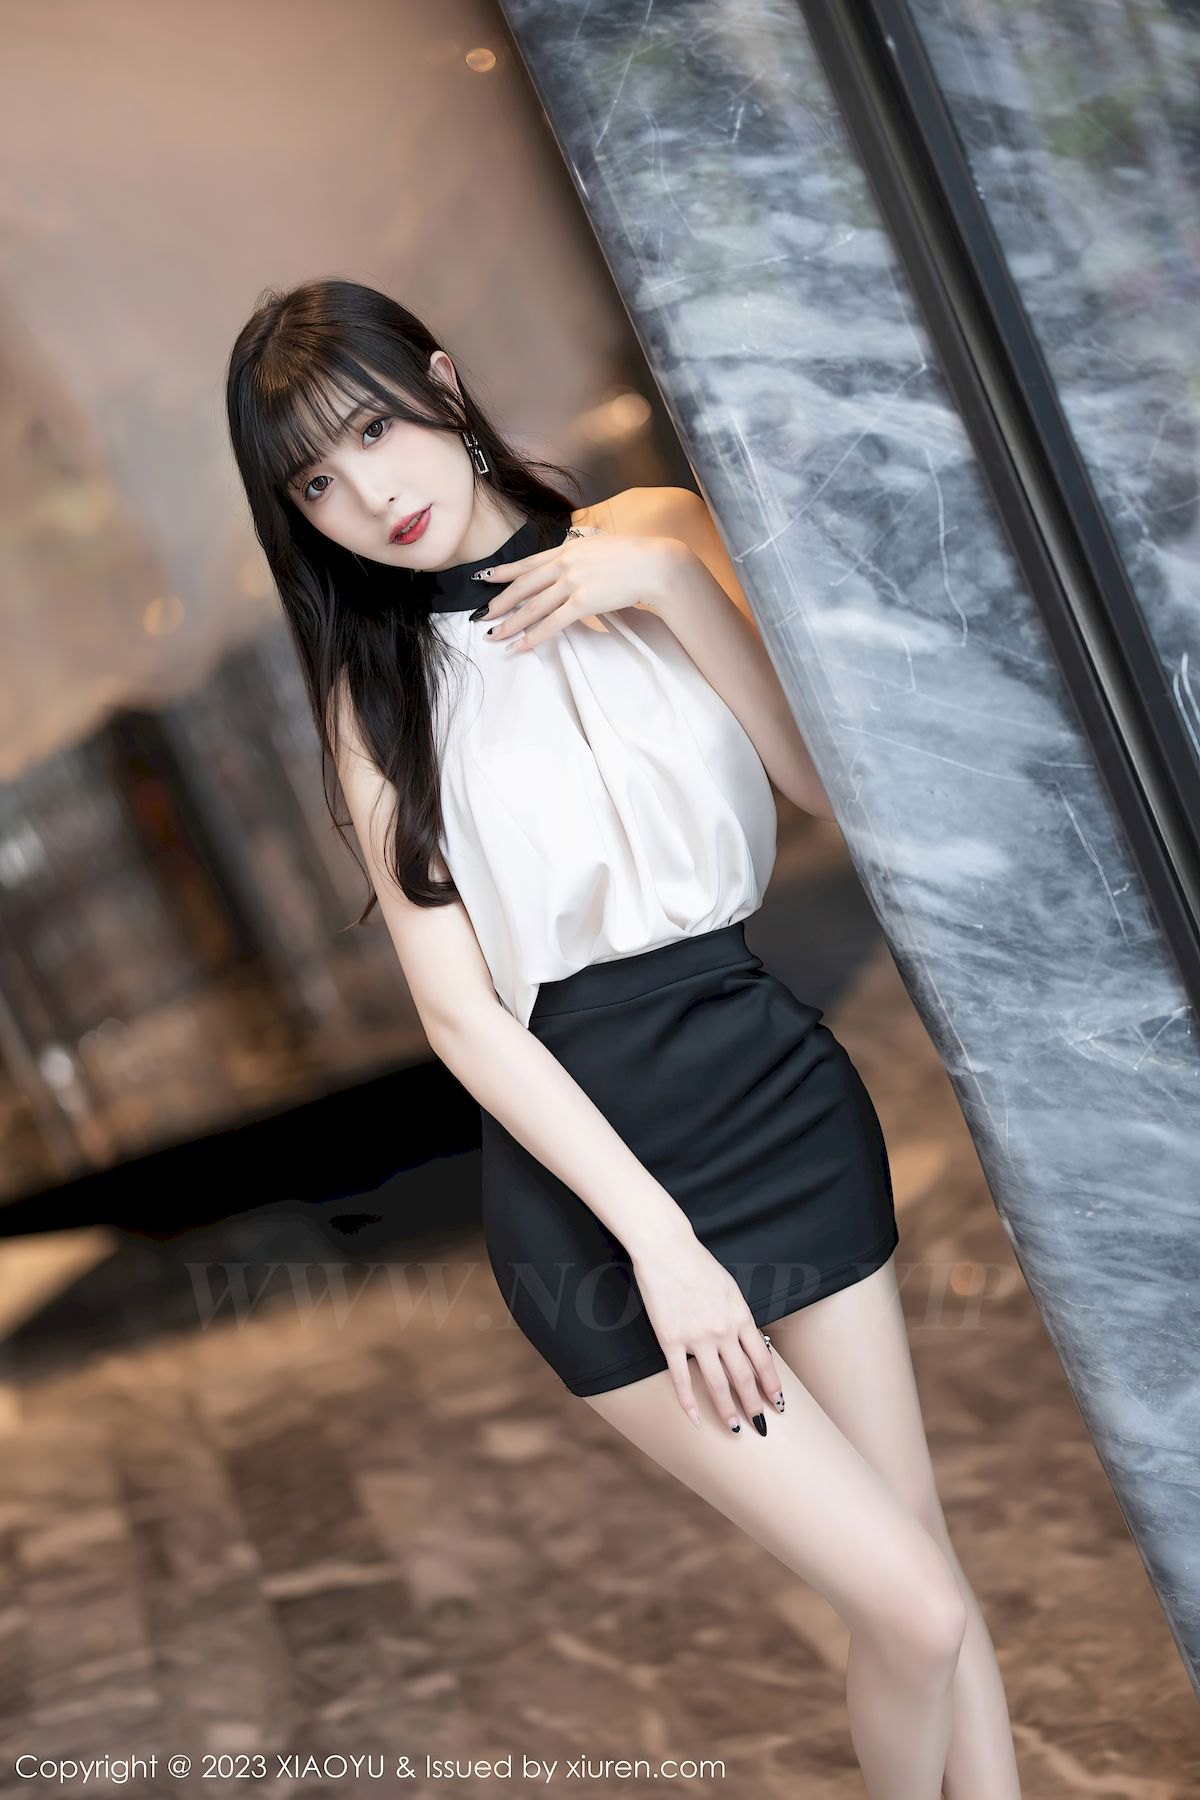 语画界美女模特林星阑浅色上衣搭配黑色短裙性感写真